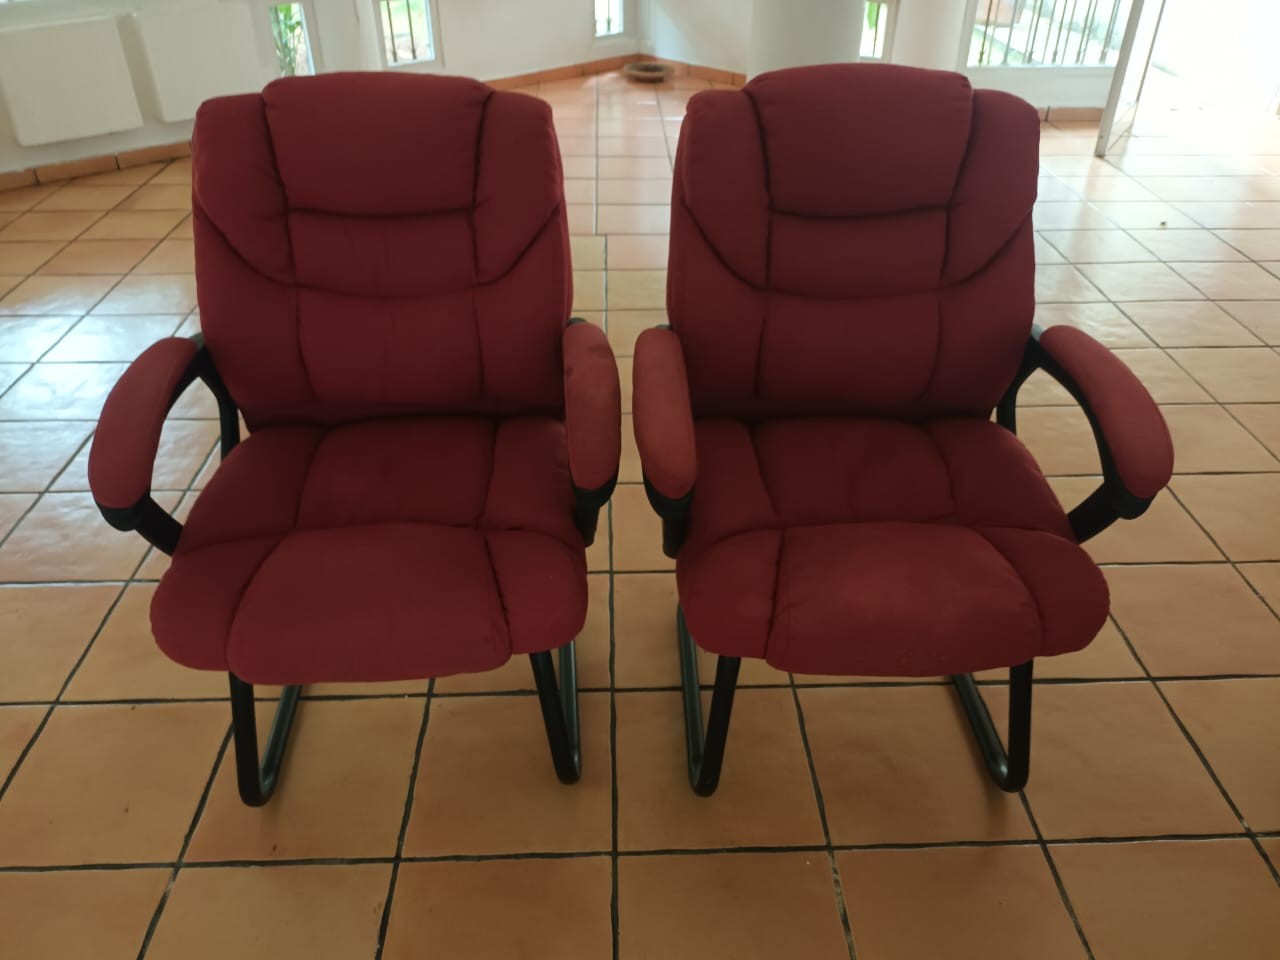 articulos de oficina - Dos sillas para oficina con forro de tela color vino. 0